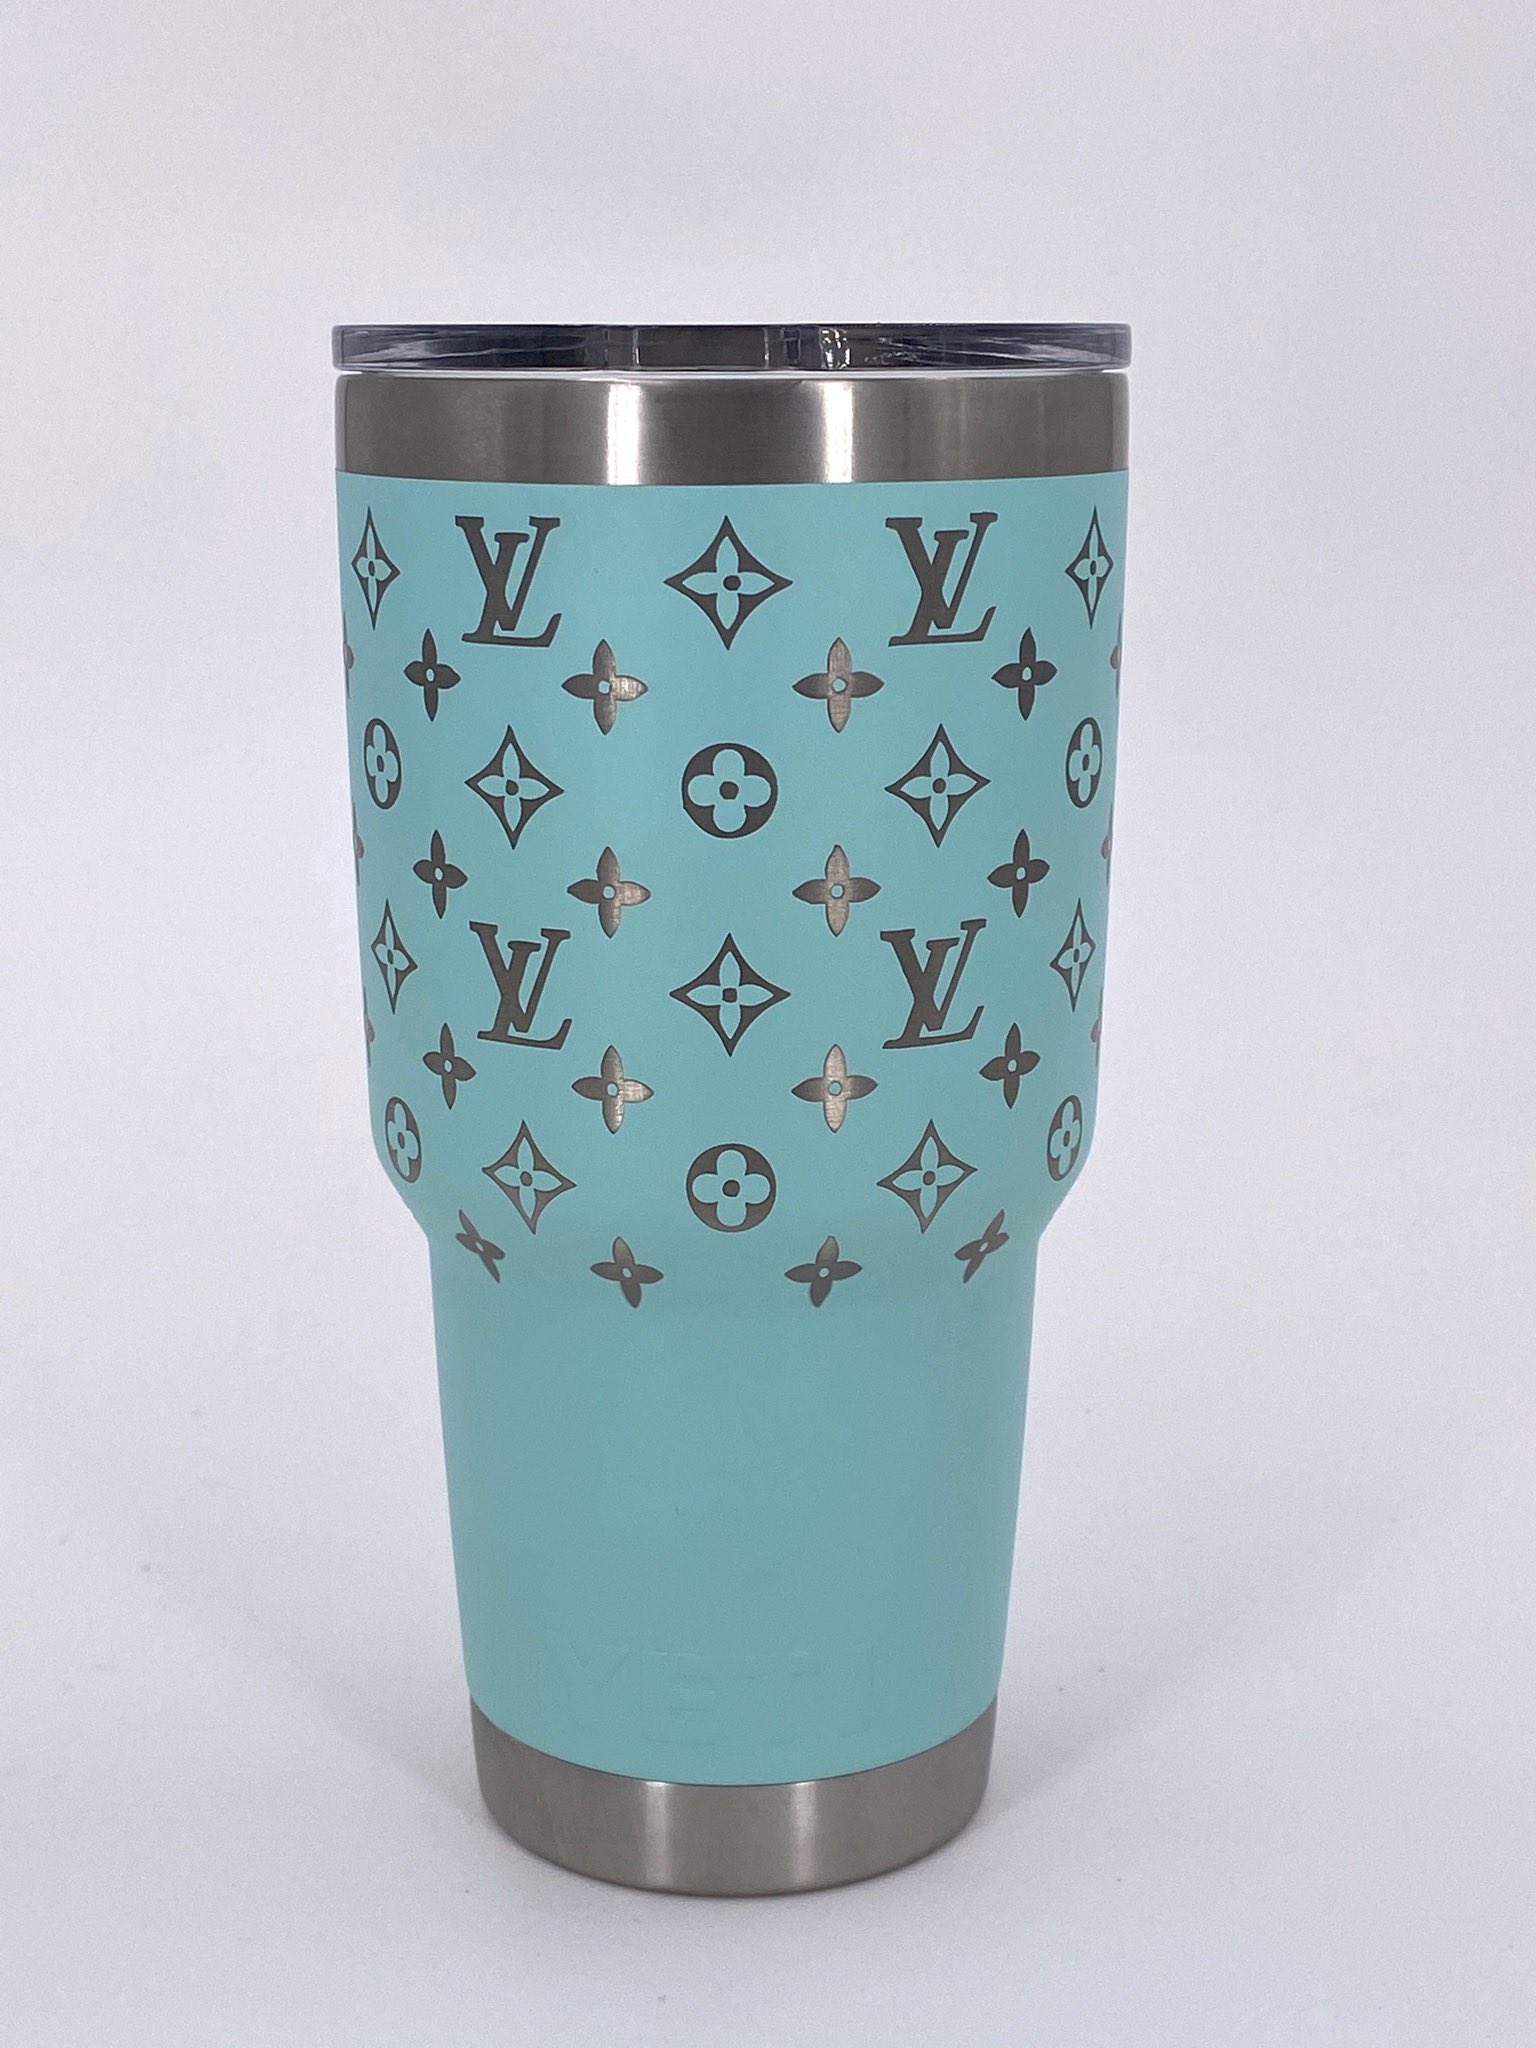 Louis Vuitton Yeti Tumbler Cup  #liketkit